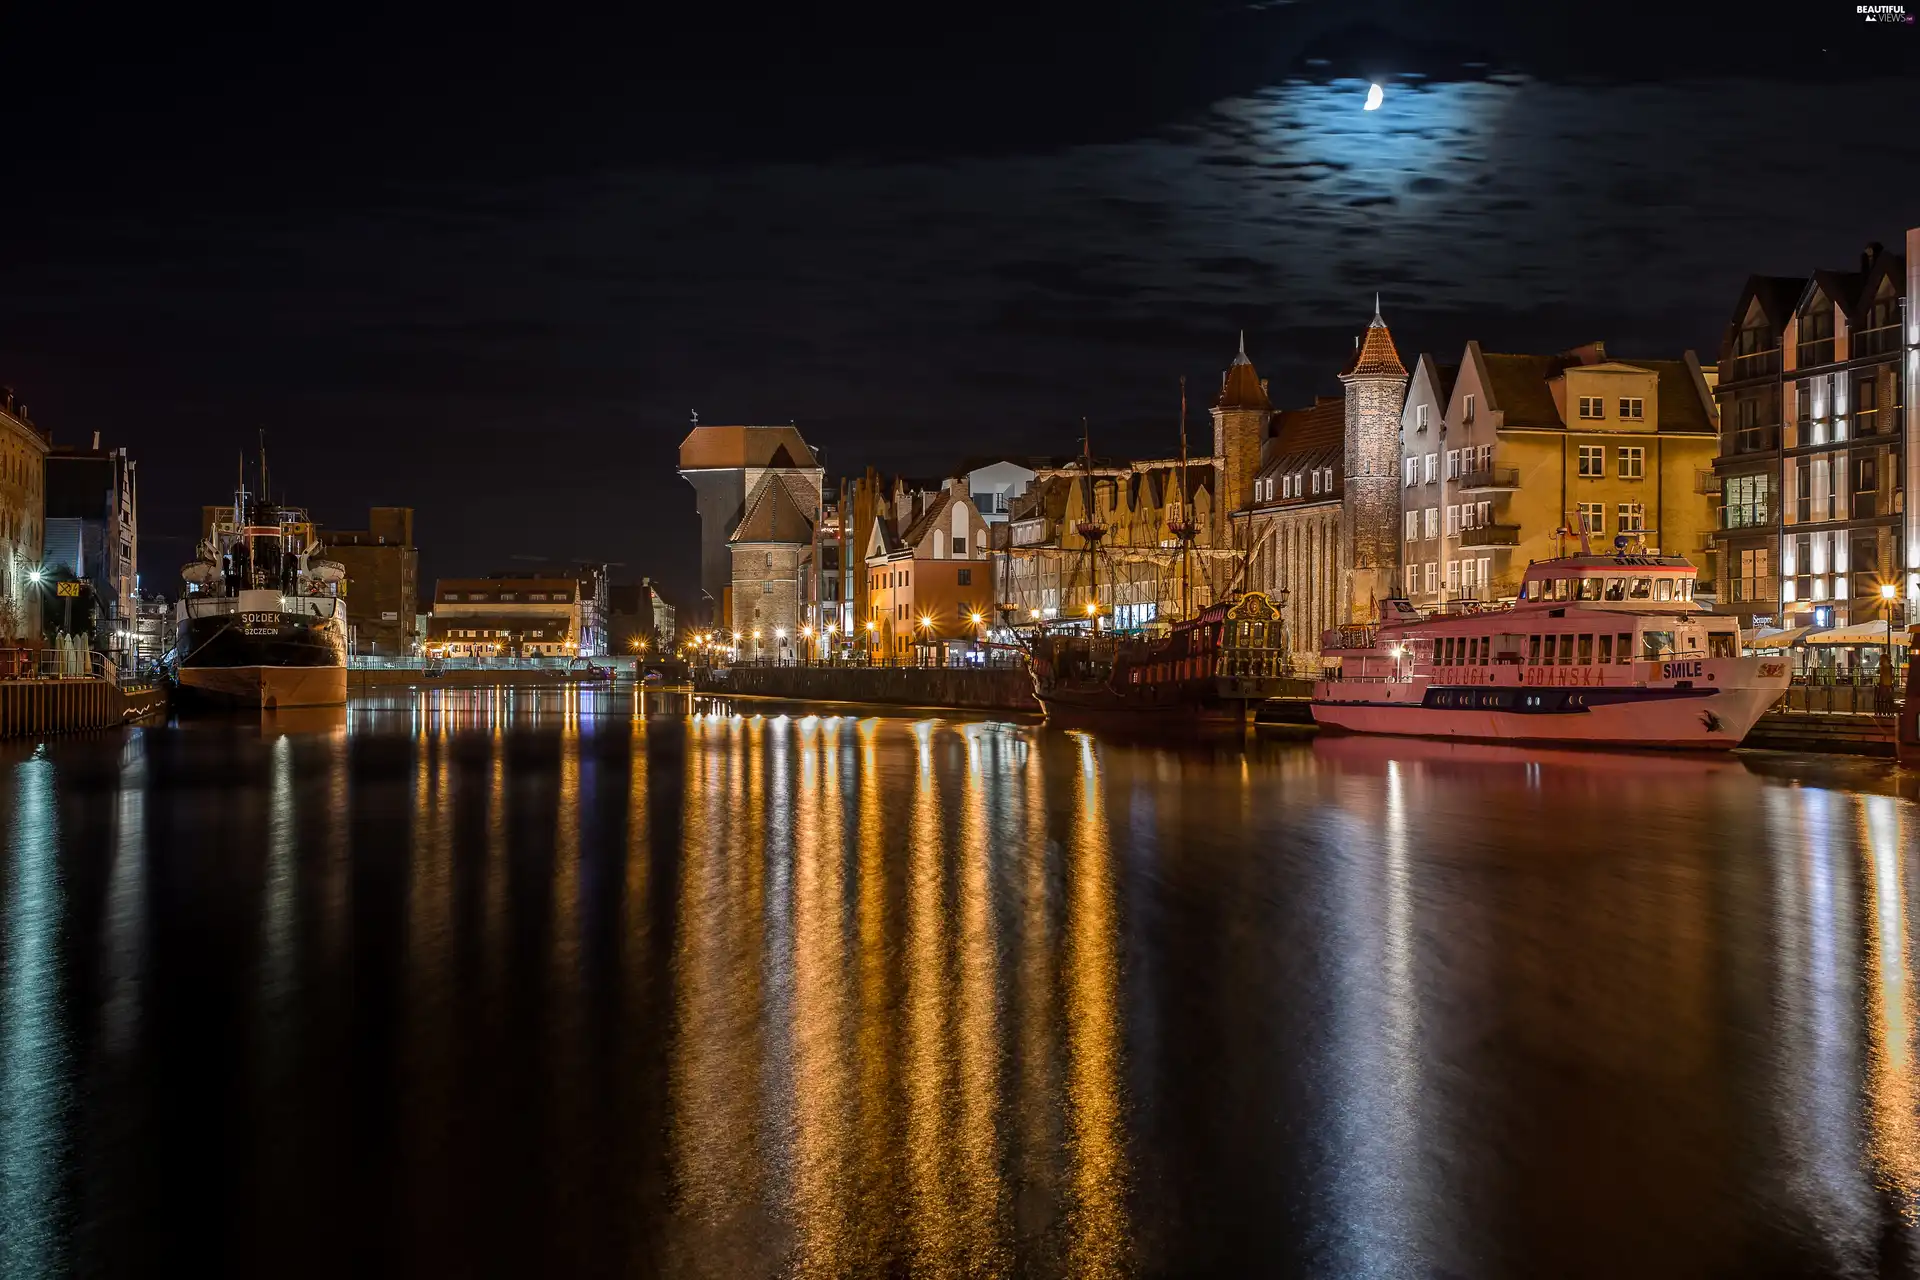 River, vessels, Gdańsk, City at Night, Poland